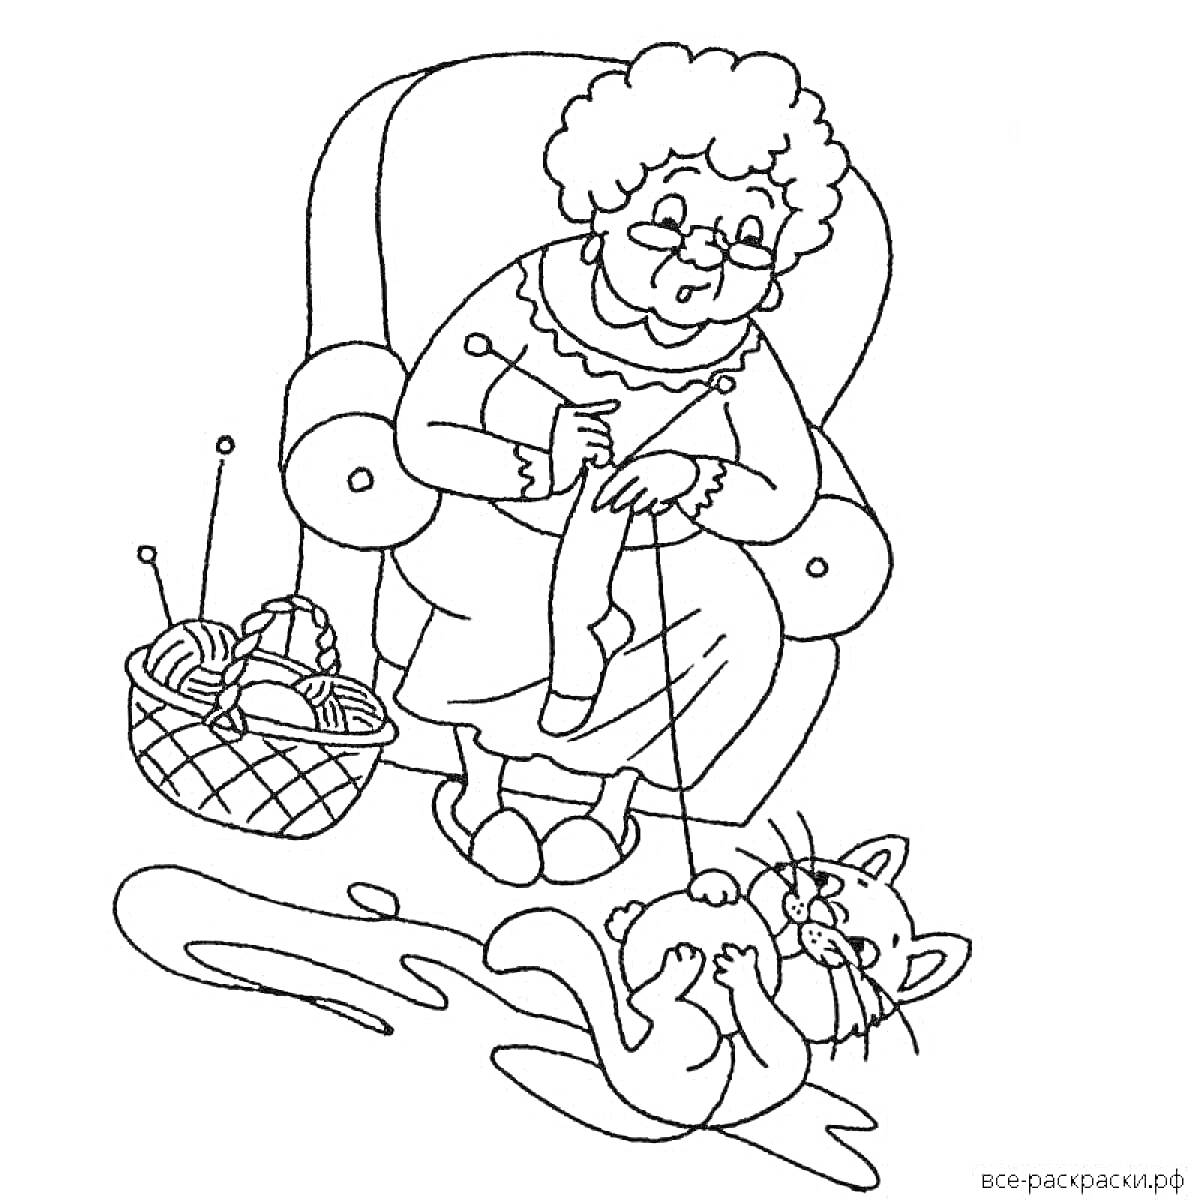 Раскраска Бабушка в кресле с вязанием и котенком, играющим с клубком ниток на полу